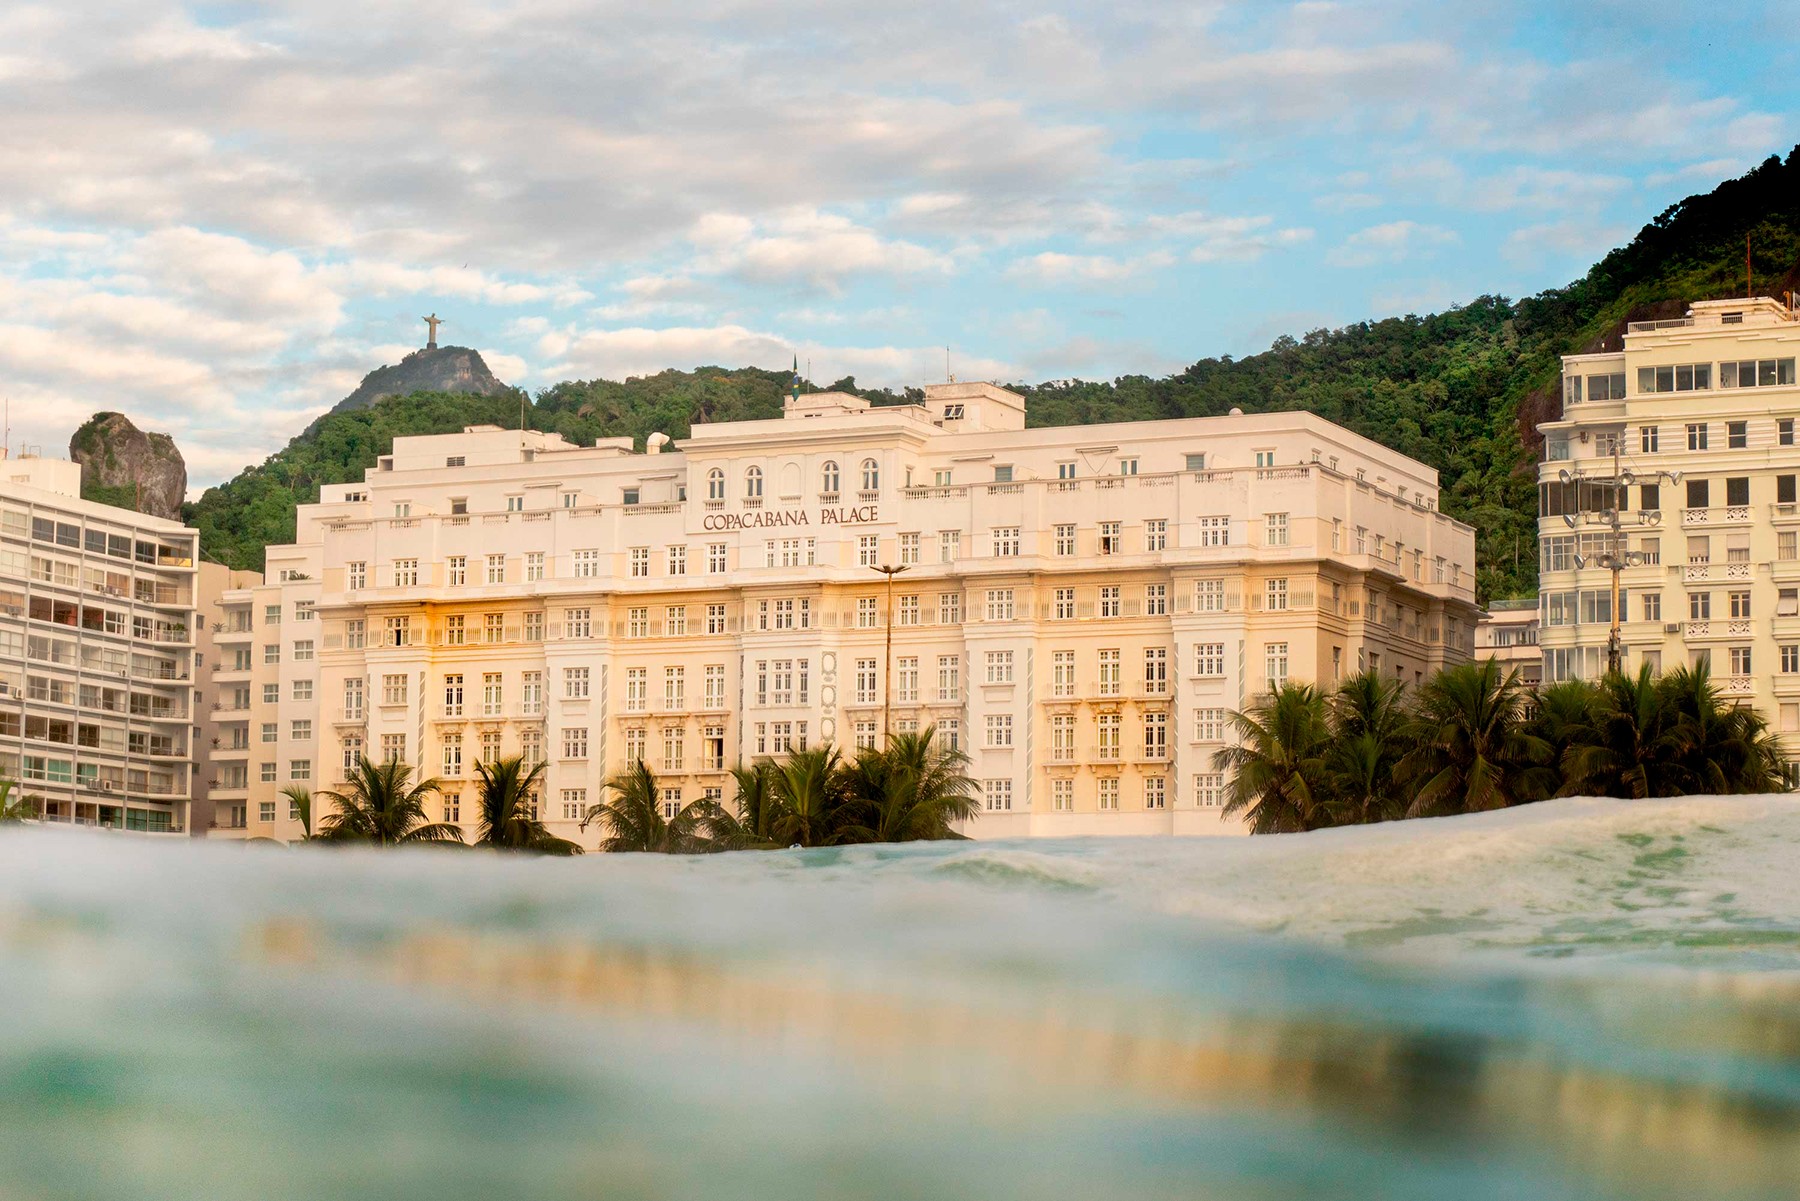 Hotel Copacabana Palace e Cristo Redentor ao fundo aparecem na foto “Princesinha do Mar”, de Paulo Barcellos (Foto: Paulo Barcellos / Divulgação)